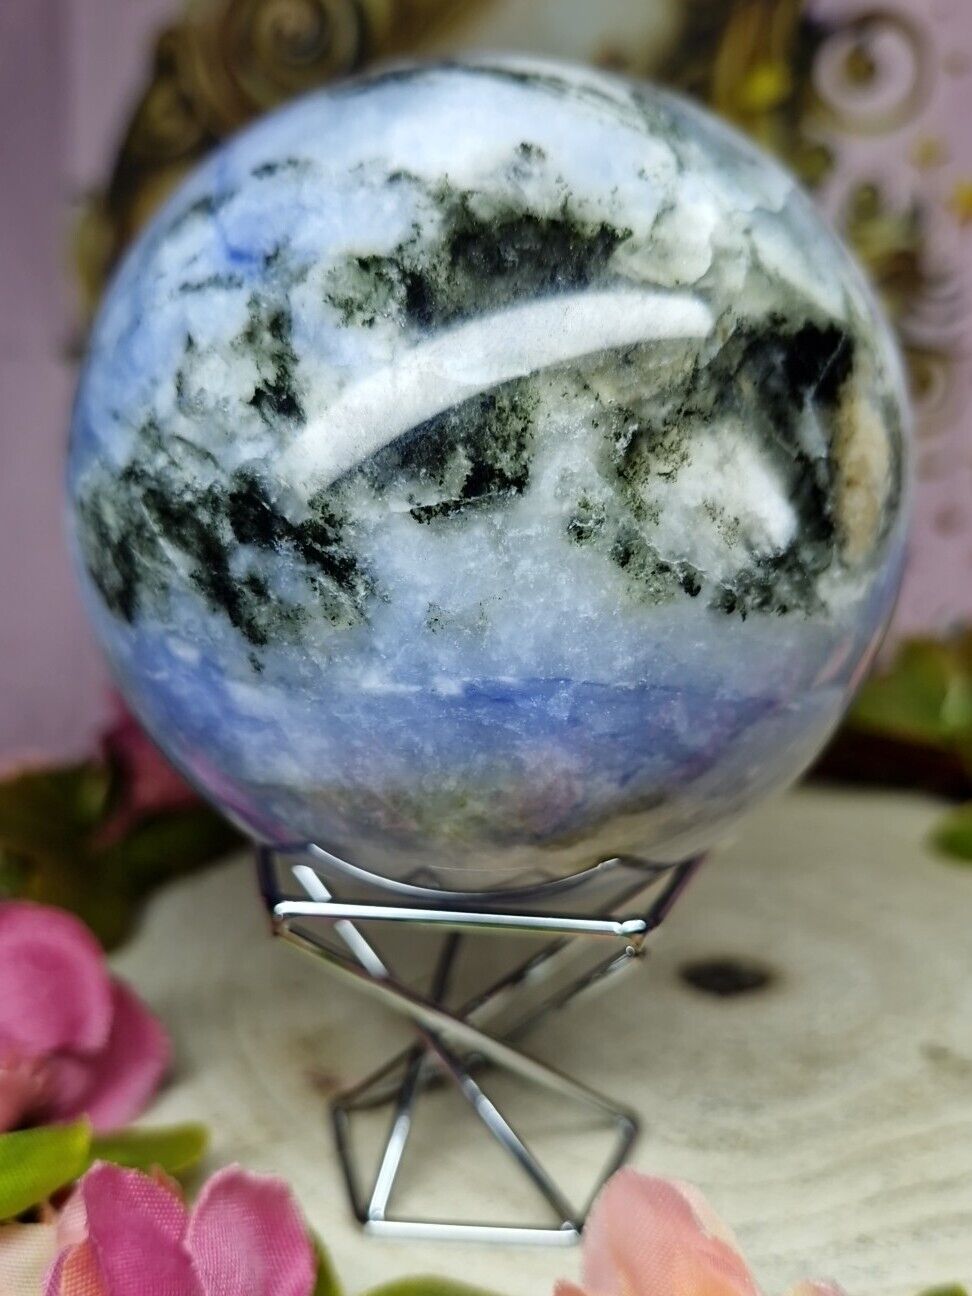 Stunning Big UV reactive Afghanite Crystal Sphere 80mm 623g & Holder - Must See